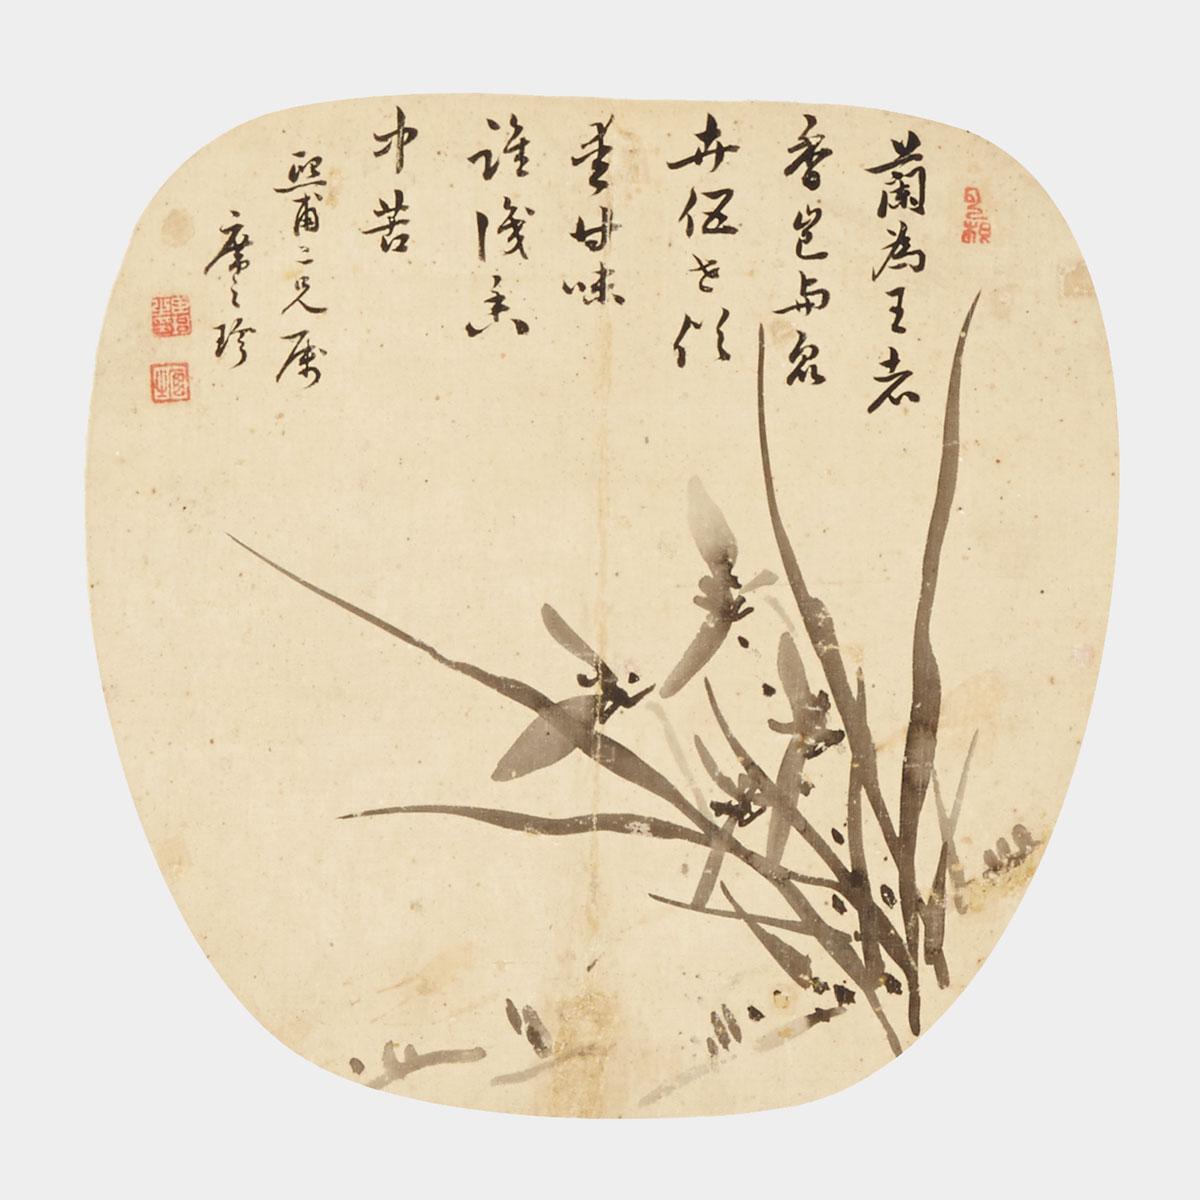 Wang Jie (Qing dynasty)